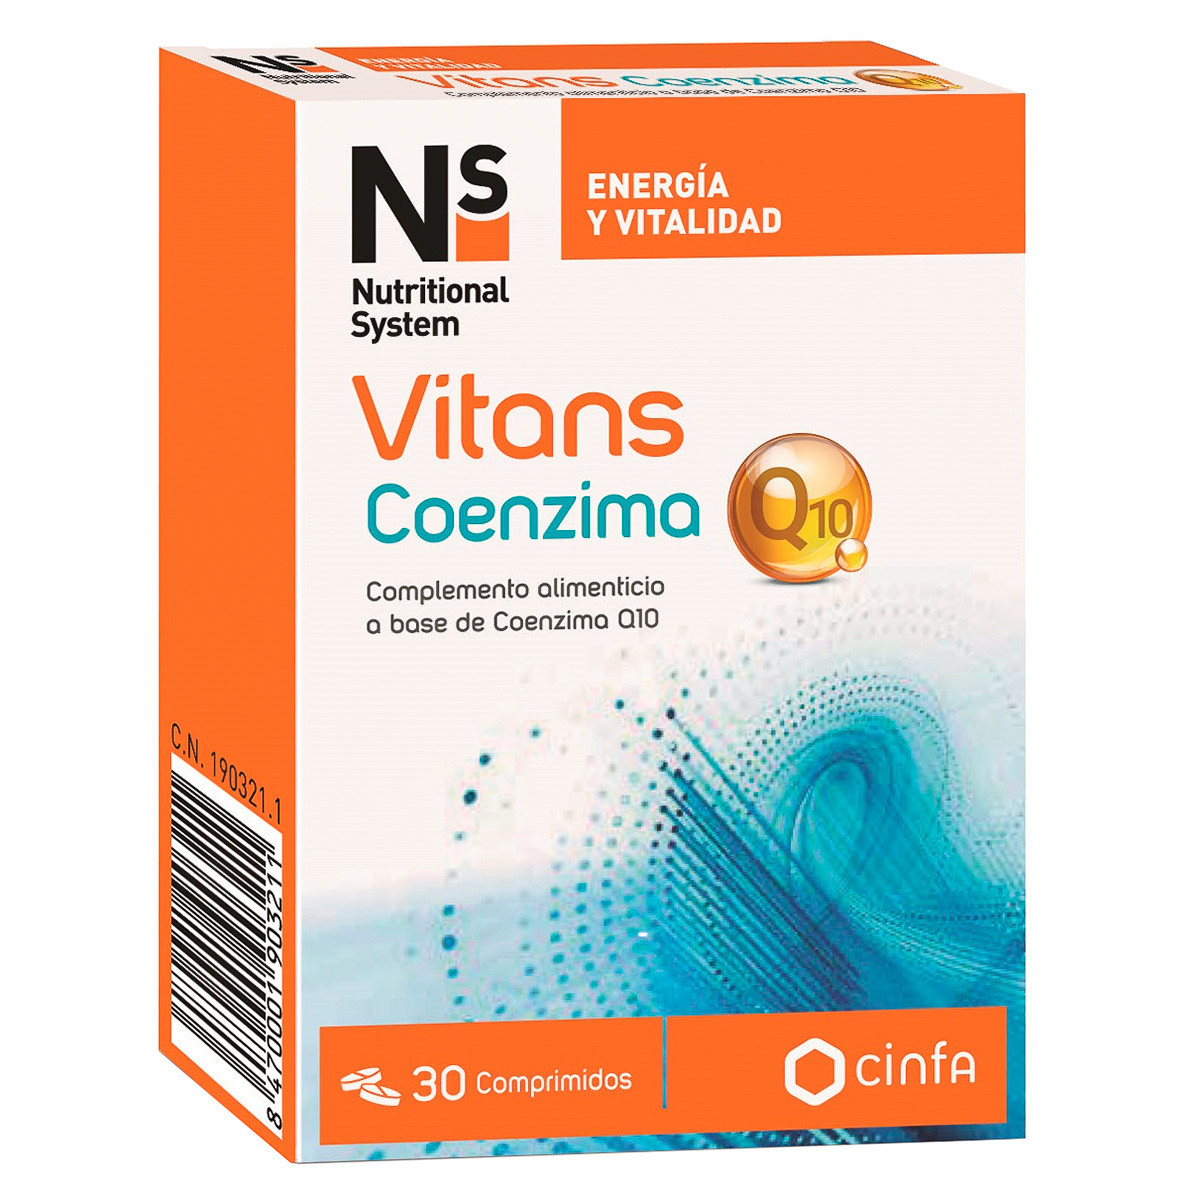 Imagen de N+s vitans coenzima q10 30 comprimidos